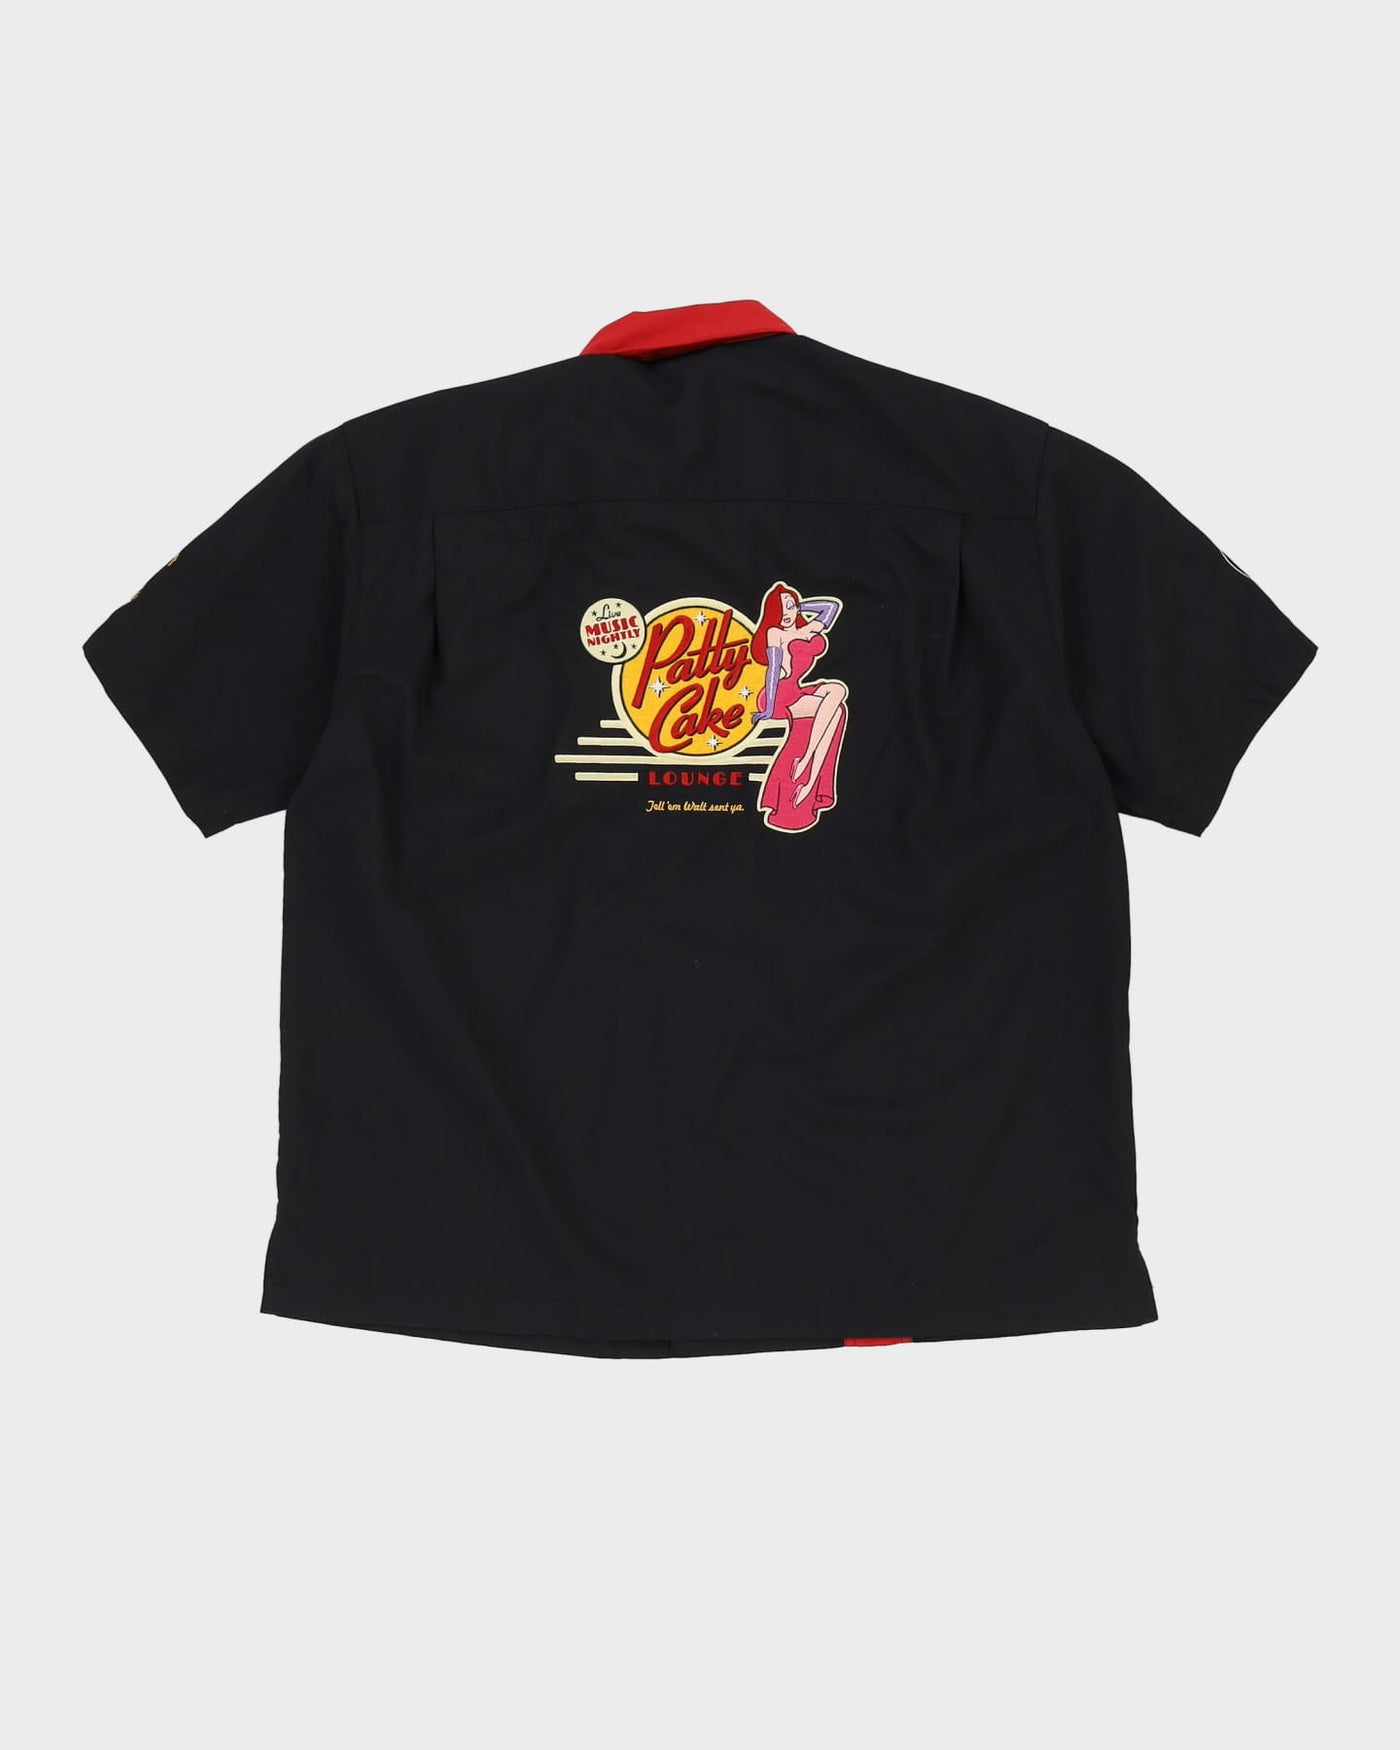 00s Disney Who Framed Roger Rabbit Black Work Shirt - XL